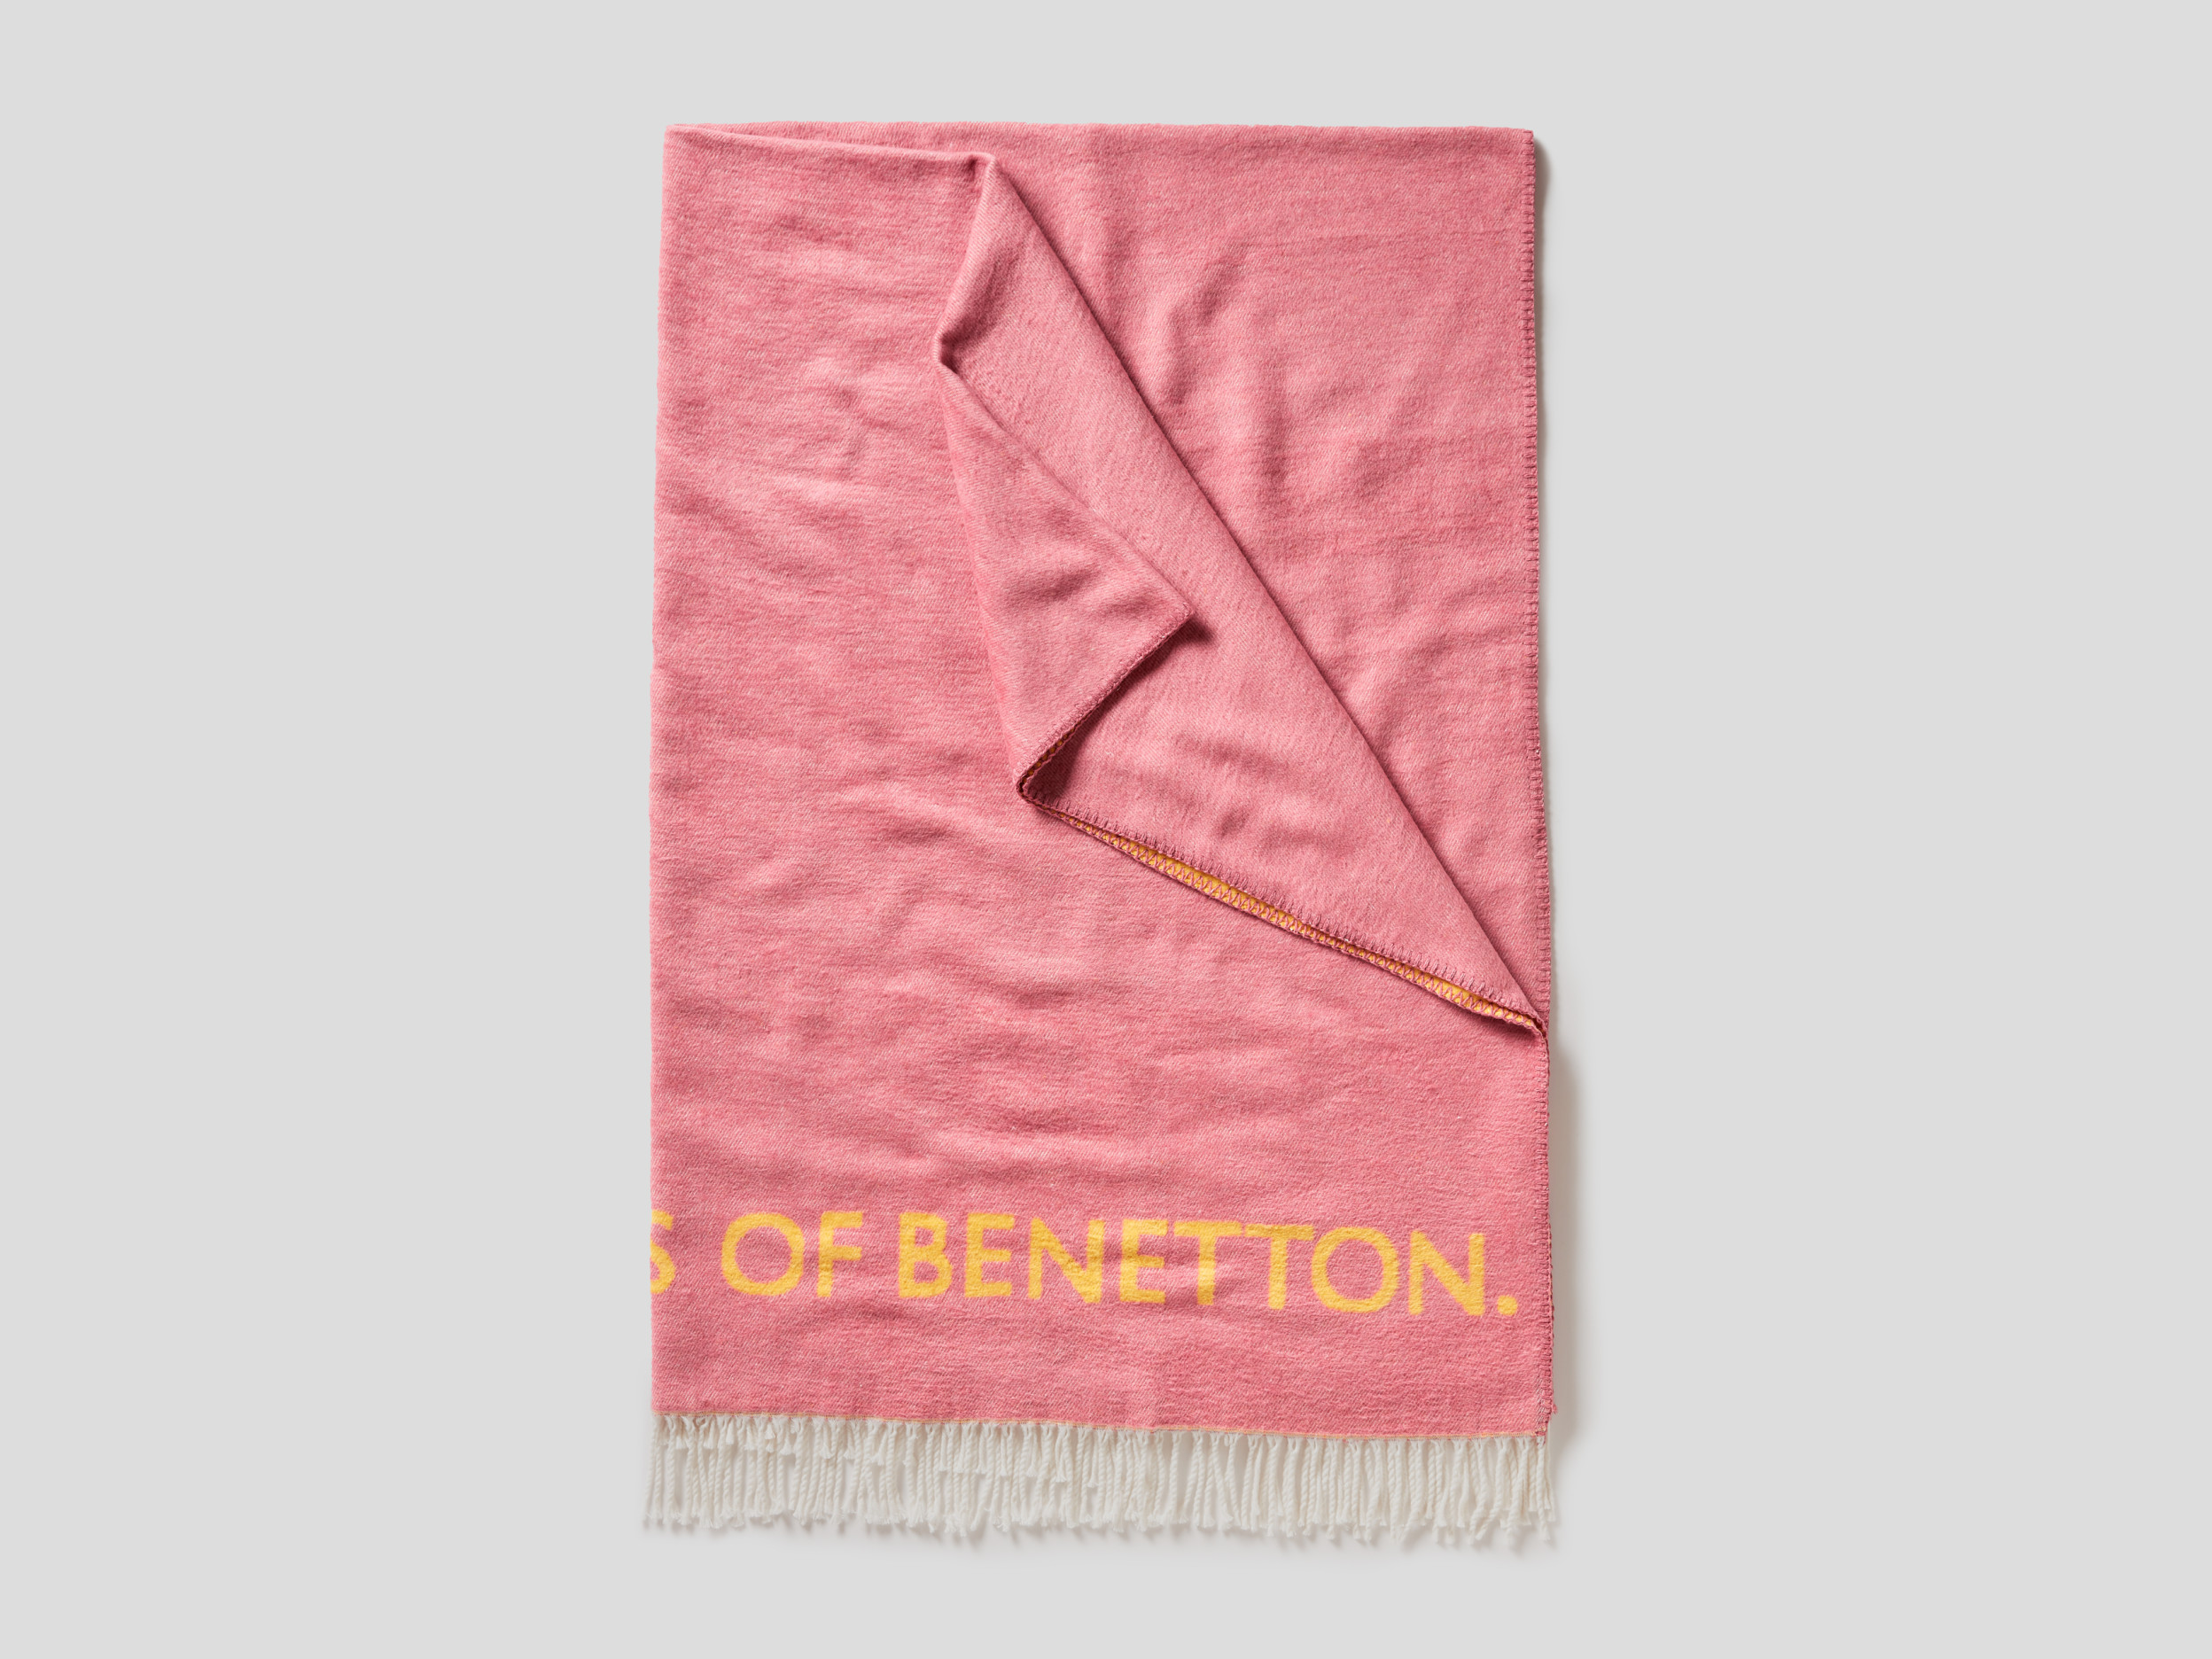 Benetton, Coperta Sfrangiata Con Logo, Rosa, Casa Benetton